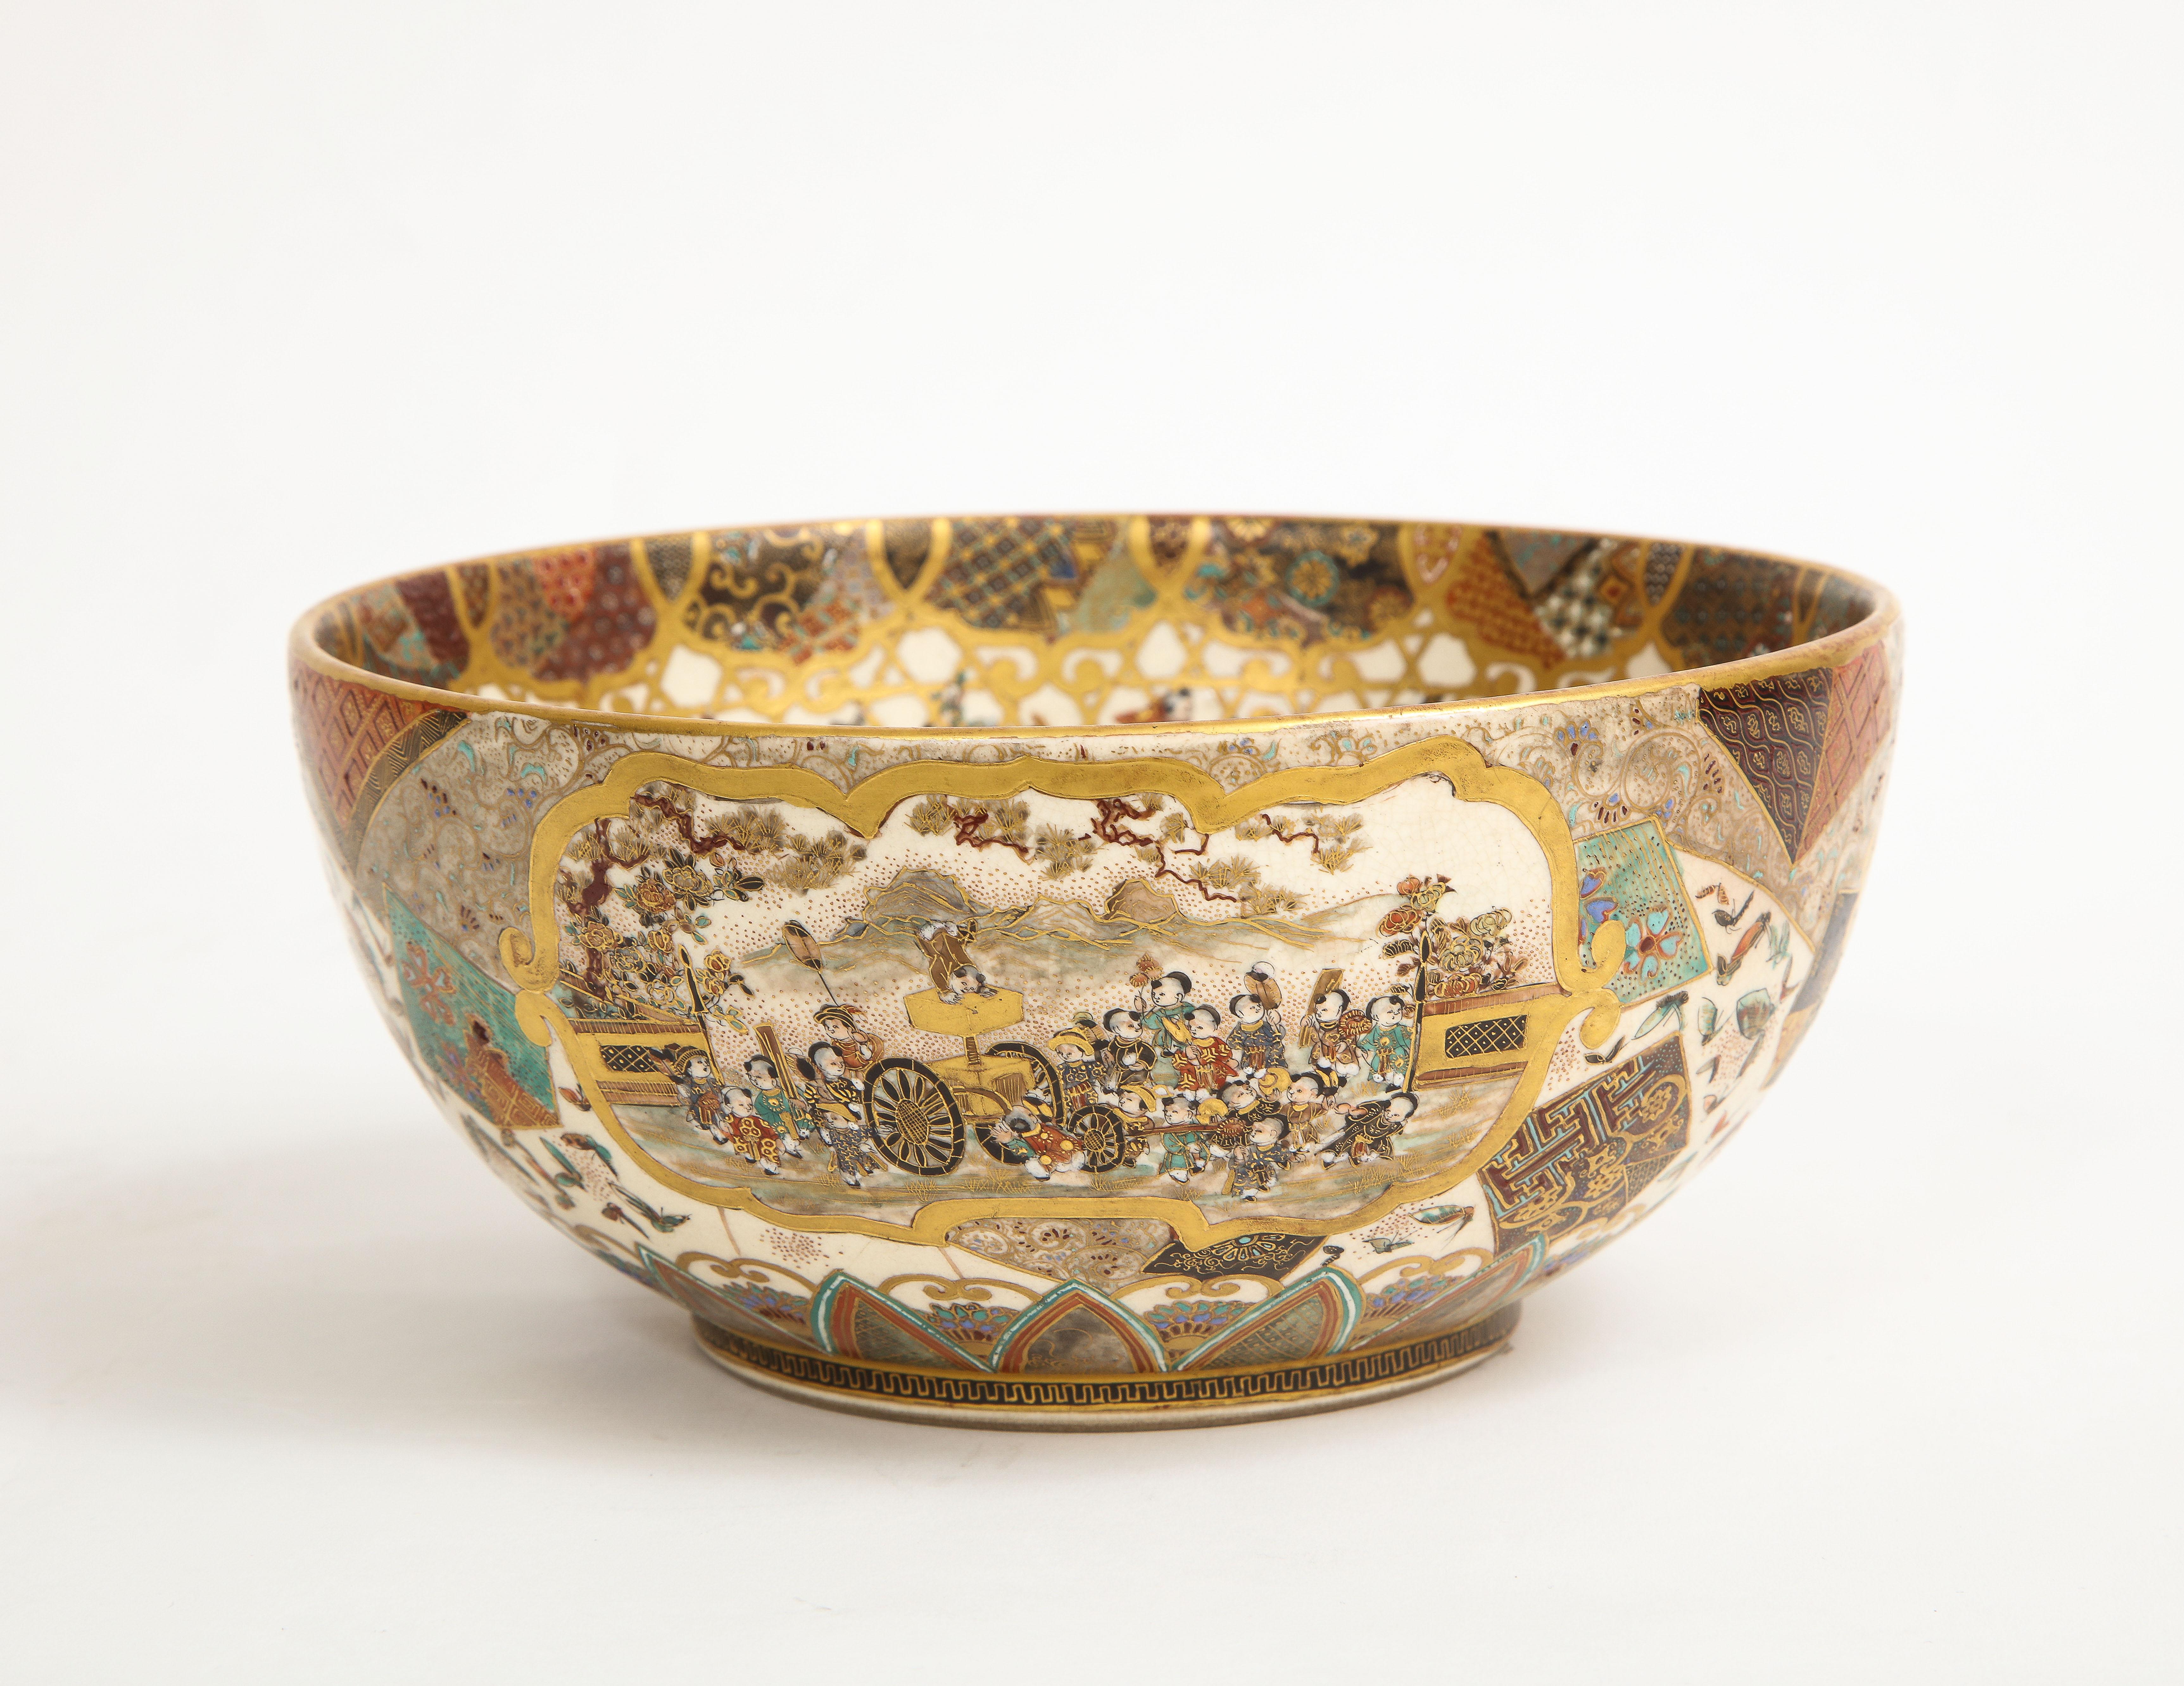 Porcelain 19th C. Japanese Satsuma Bowl, Meiji Era, Probably by Meizan, Signed on Bottom